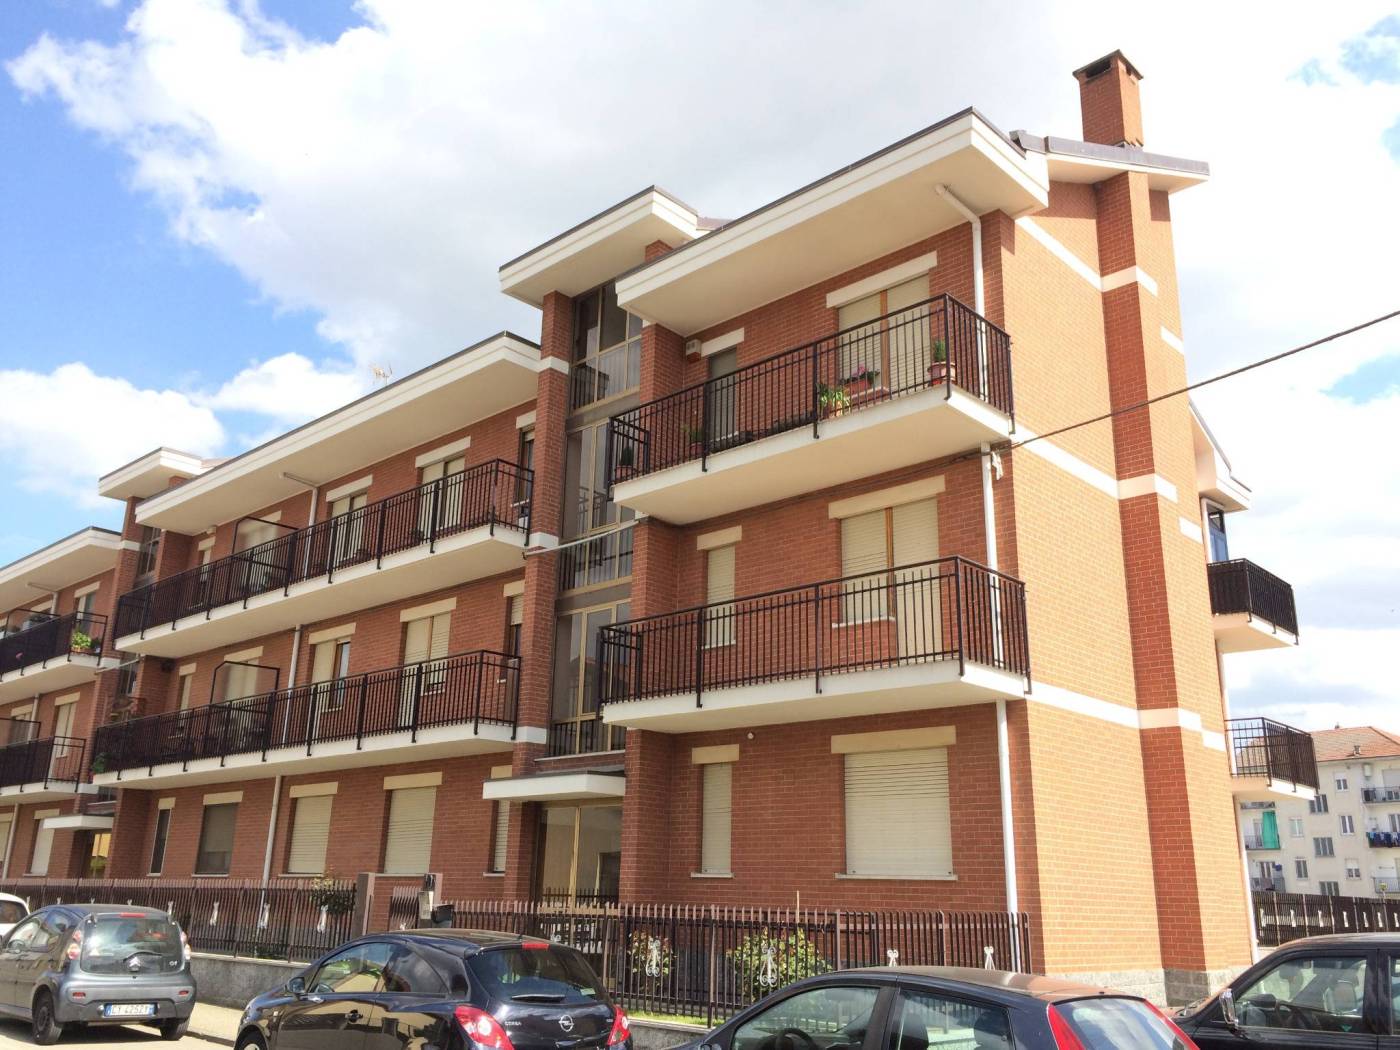 In Riva presso Chieri, nel centro del paese, proponiamo in vendita un bilocale al primo piano di una palazzina anni 80. L'immobile si compone di 